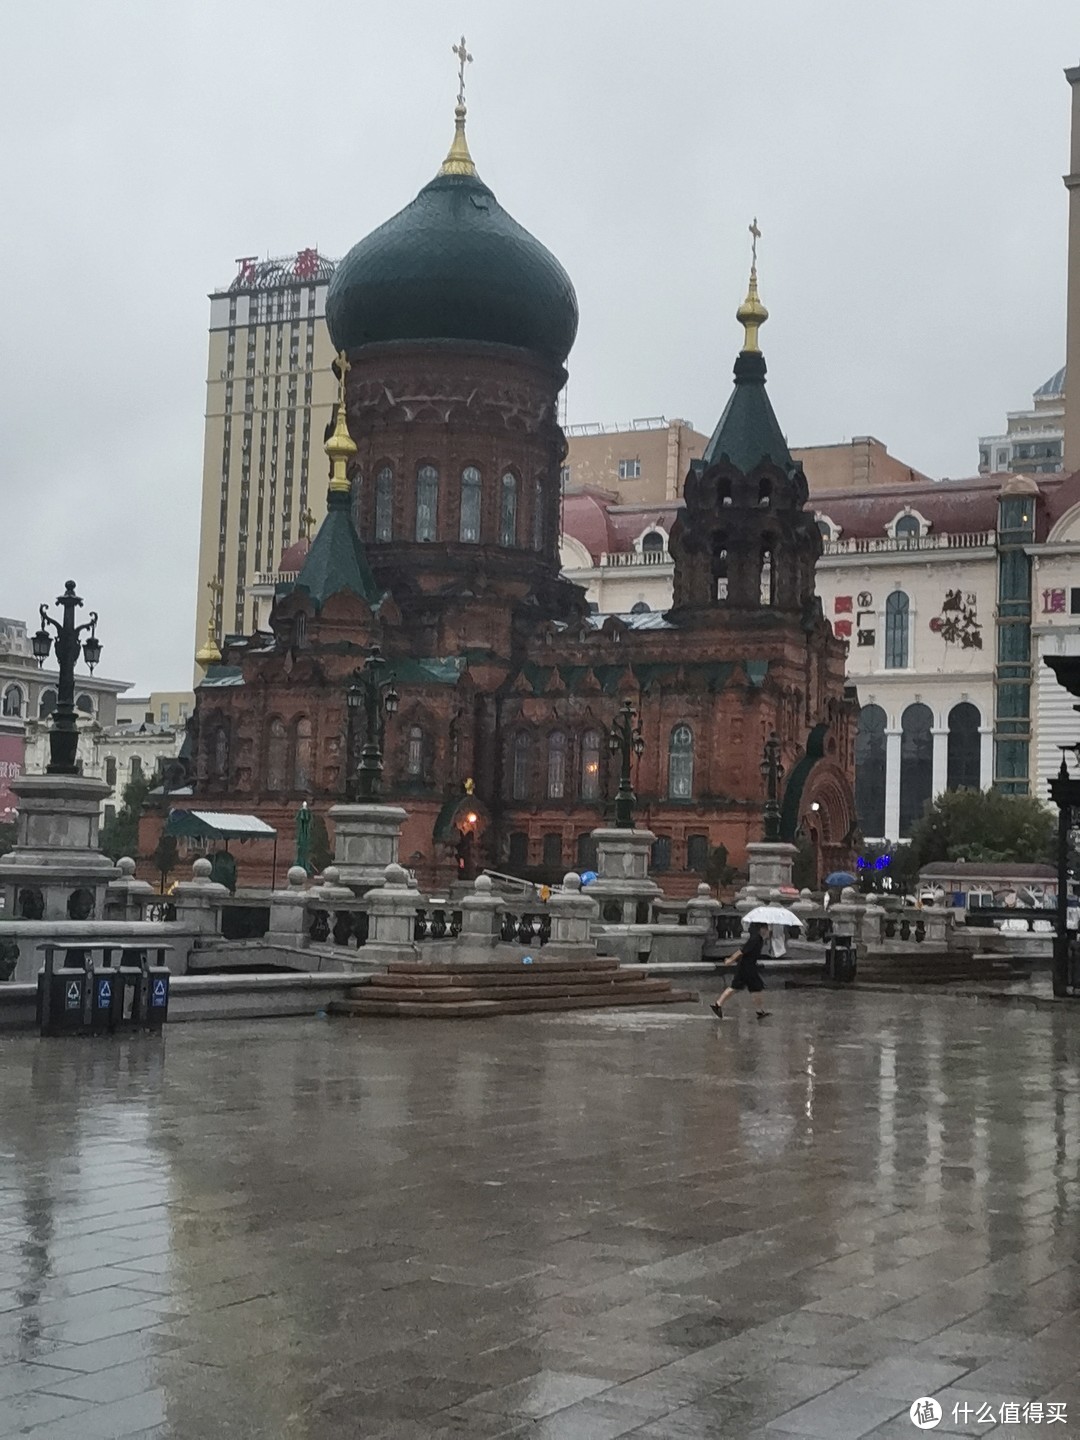 雨中的大教堂，旁边就是商场跟各种现代化建筑，